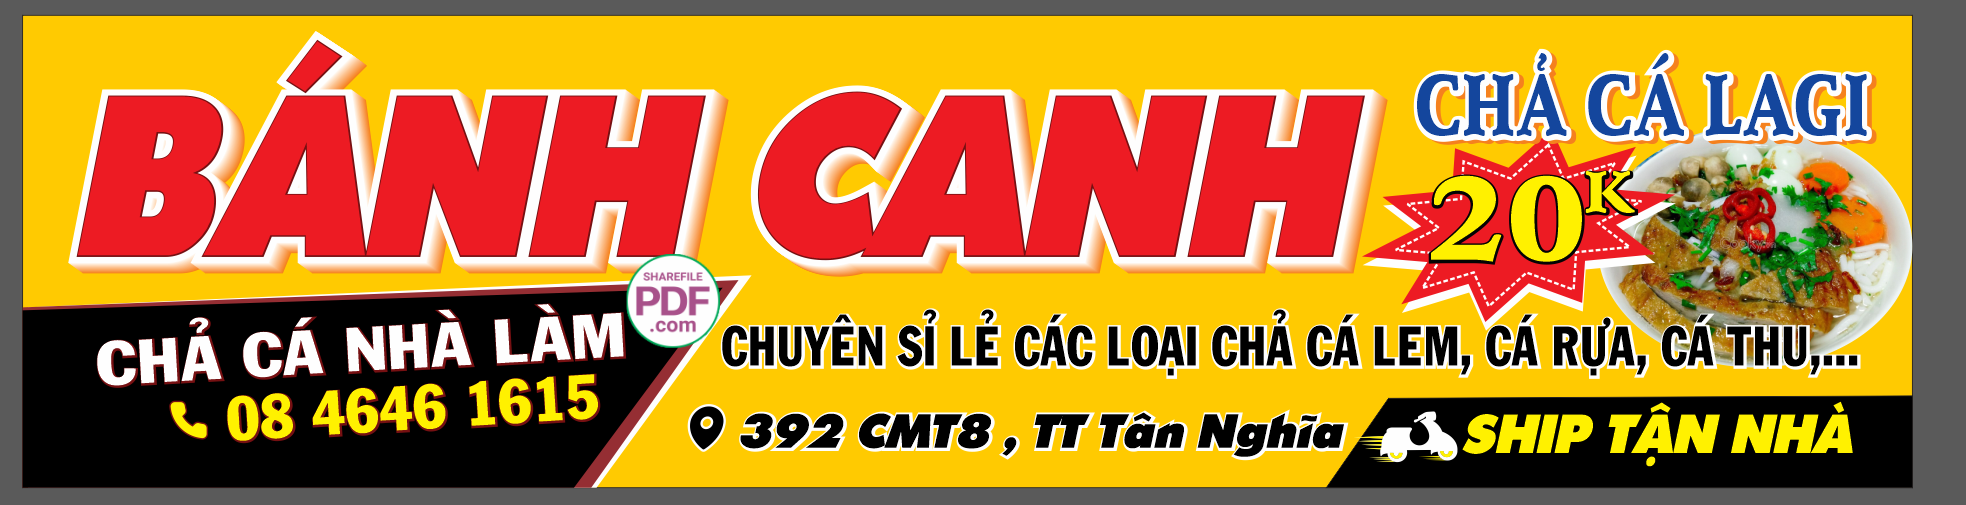 banh canh - cha ca.png